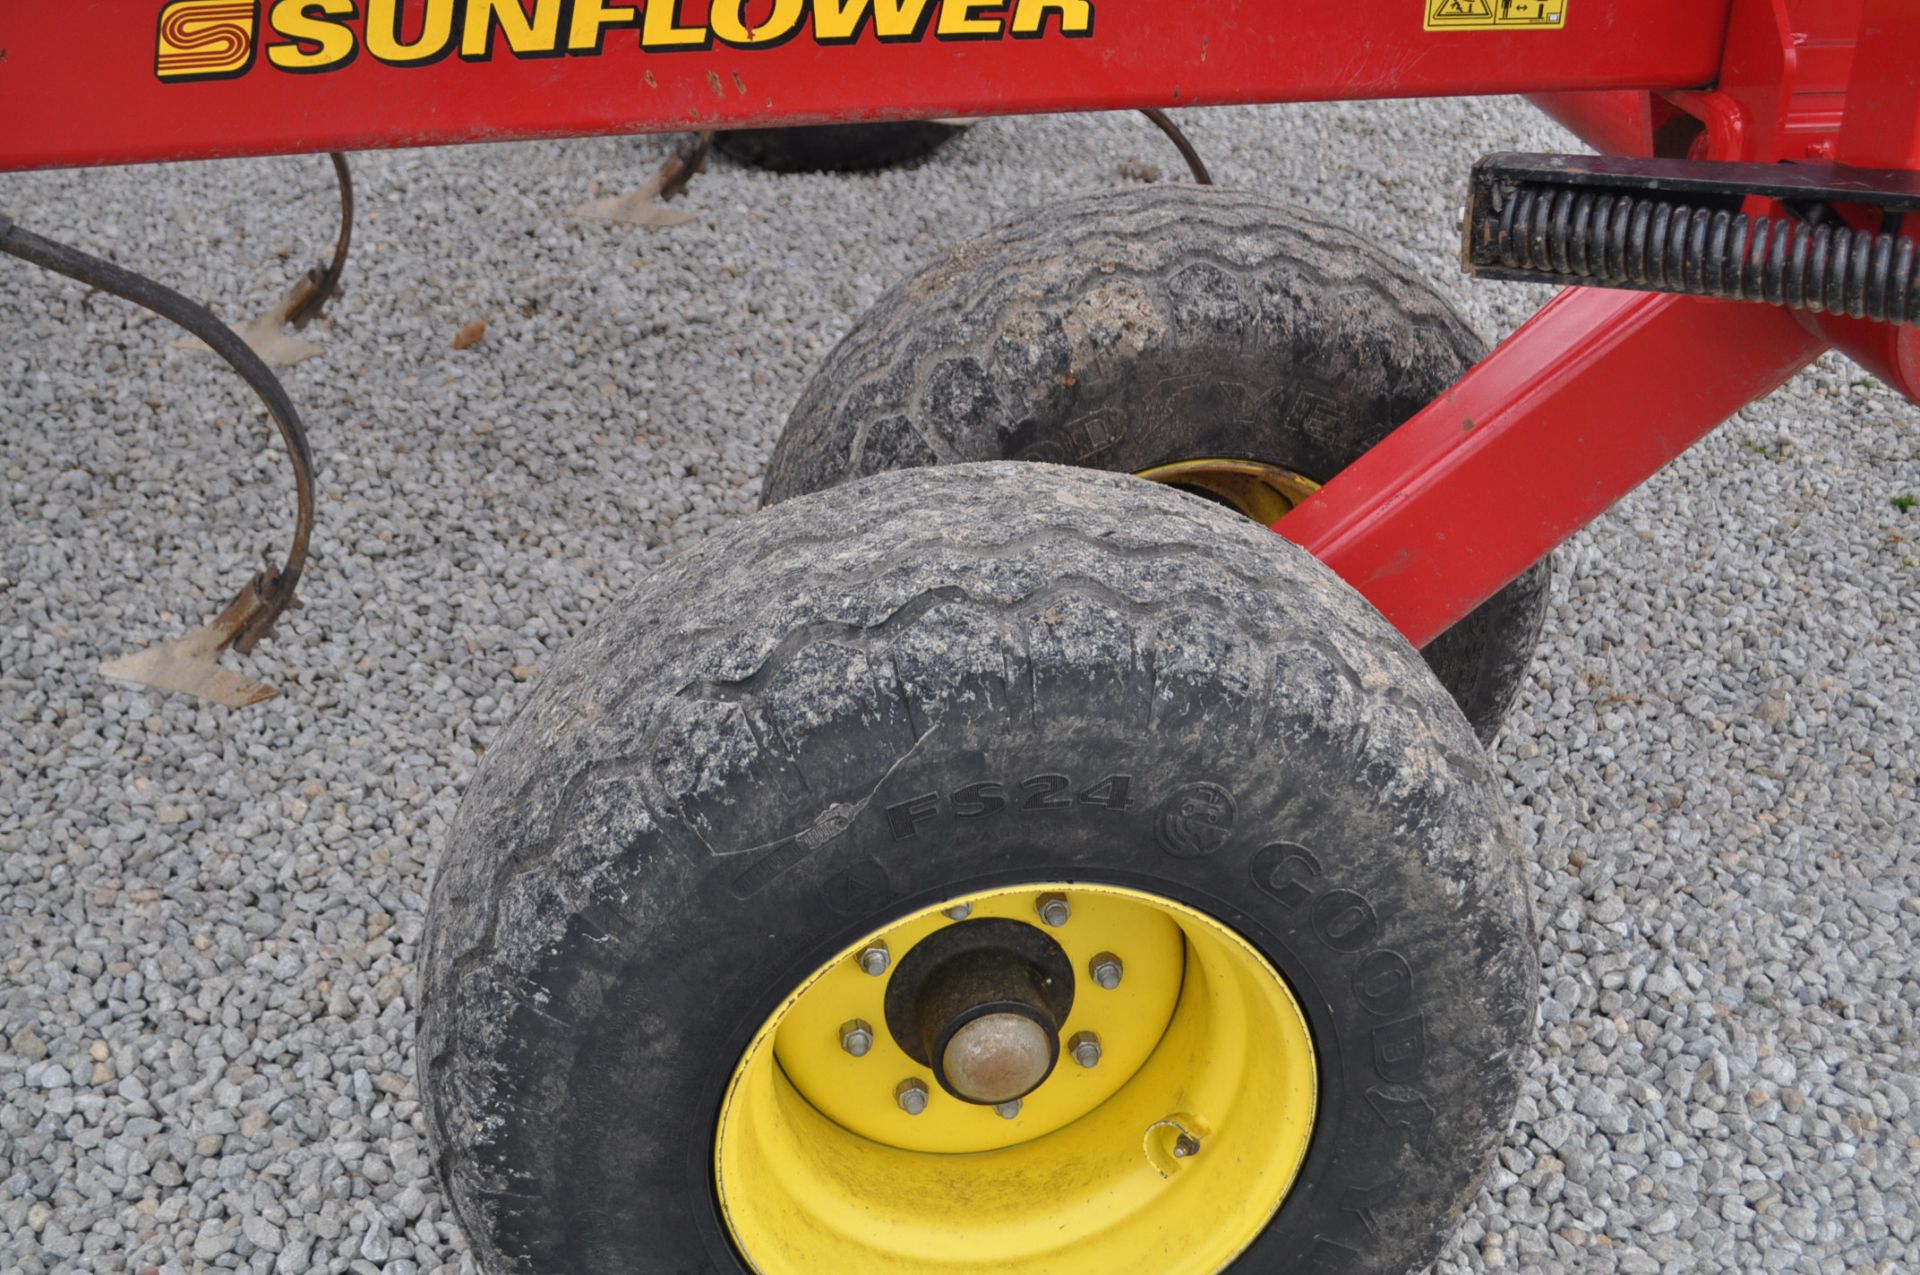 43’ Sunflower 6433 soil finisher, discs, rolling baskets, sweeps, 3-bar harrow, rear rolling - Image 12 of 13